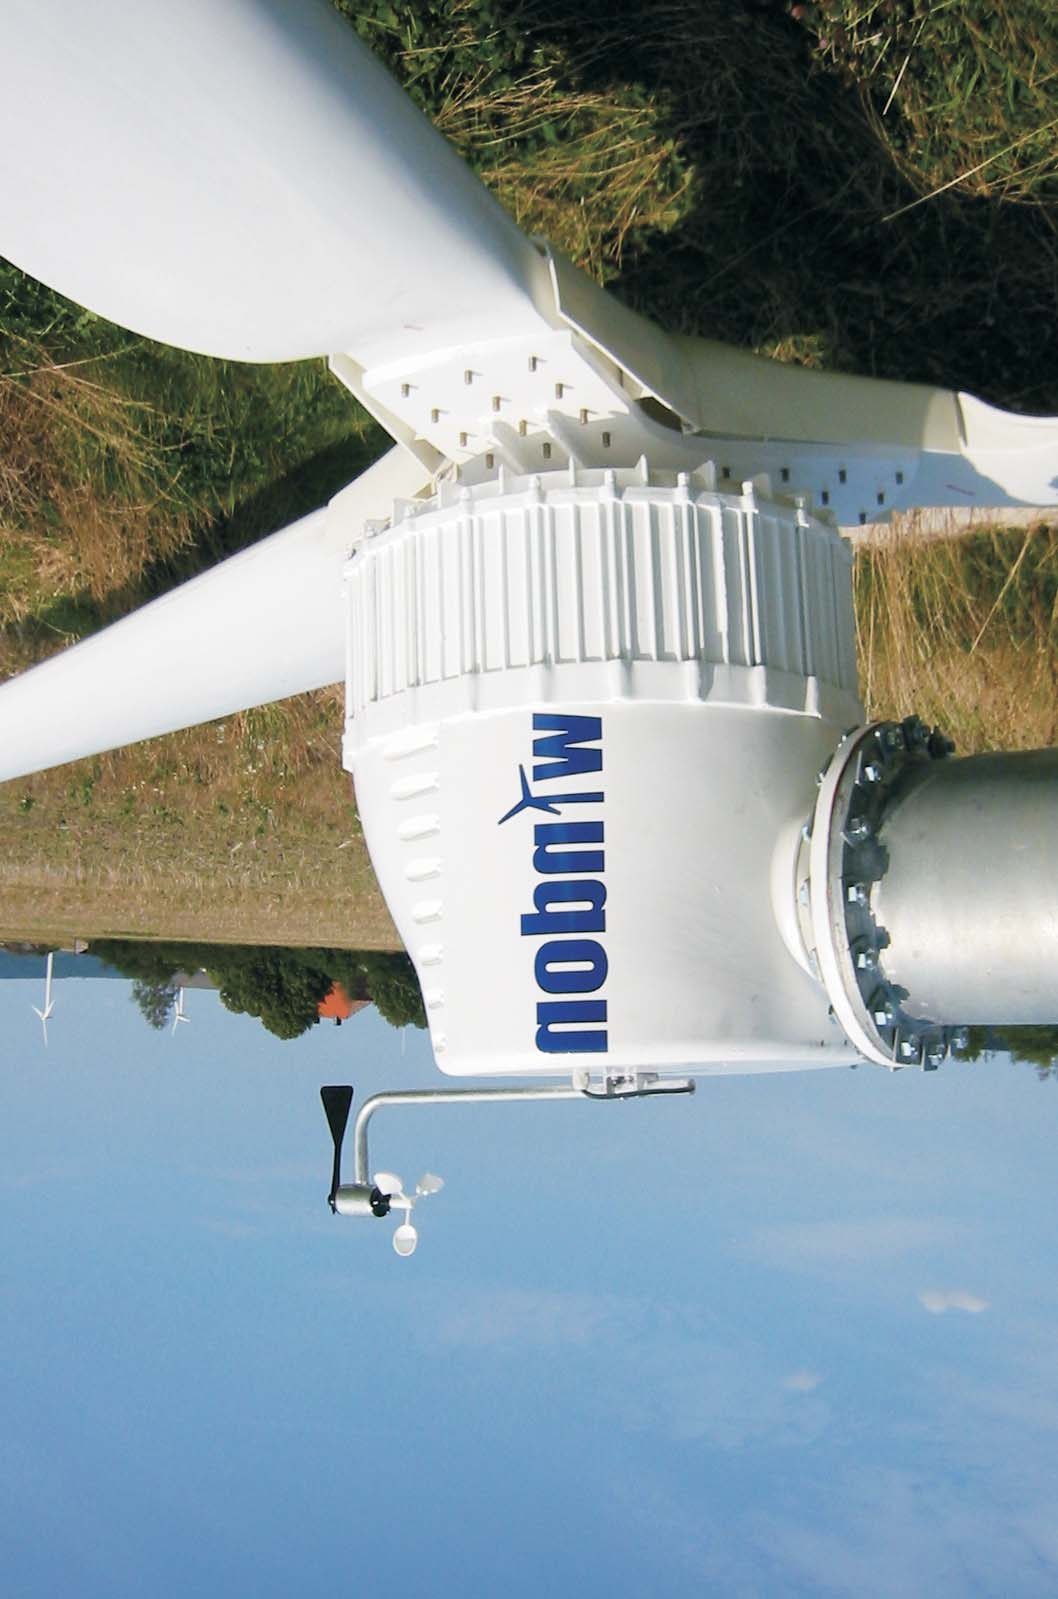 Turbinas eólicas windon Especificación detallada Potencia nominal Diámetro de rotor Altura de buje Concepto Clase de viento Velocidad nominal Velocidad máxima Vida mínima 20kW 20kW 12 m 18/24/30m